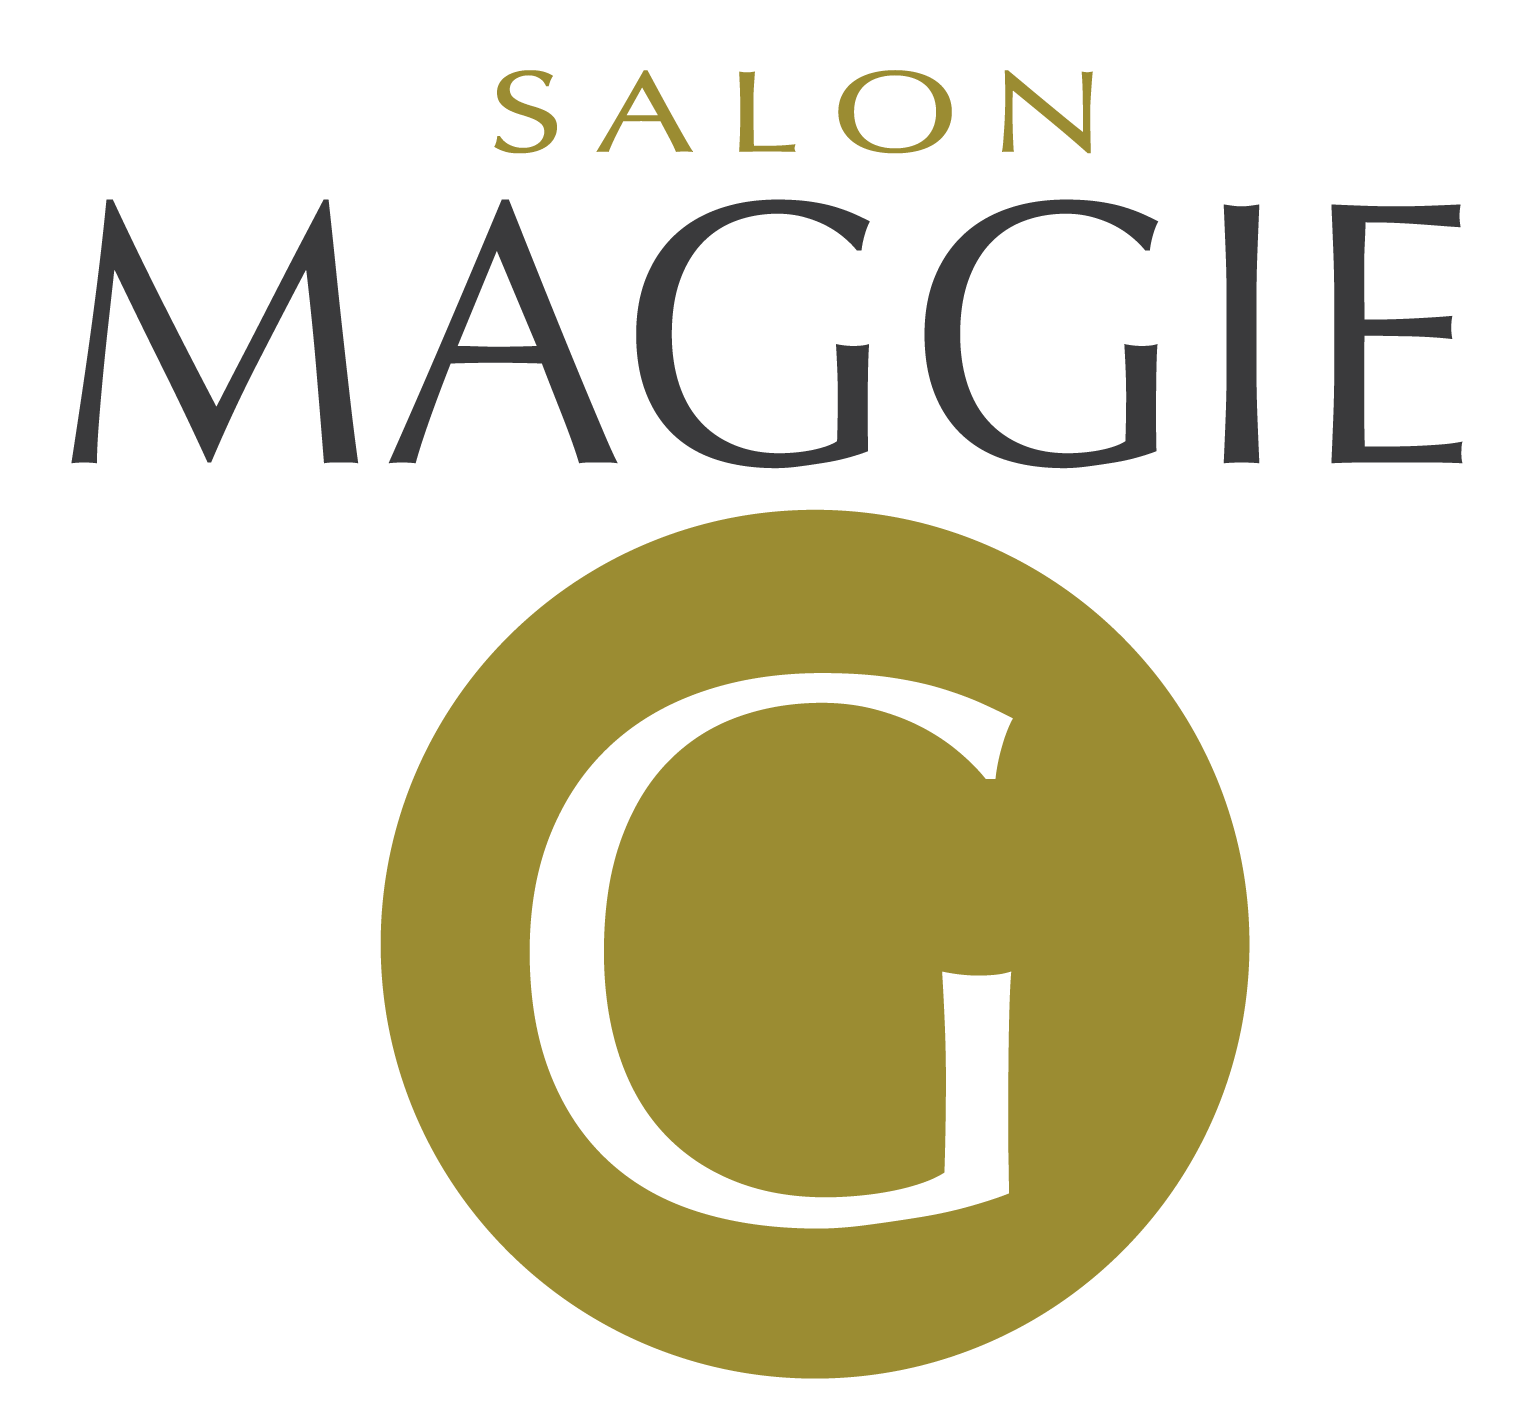 Salon Maggie G